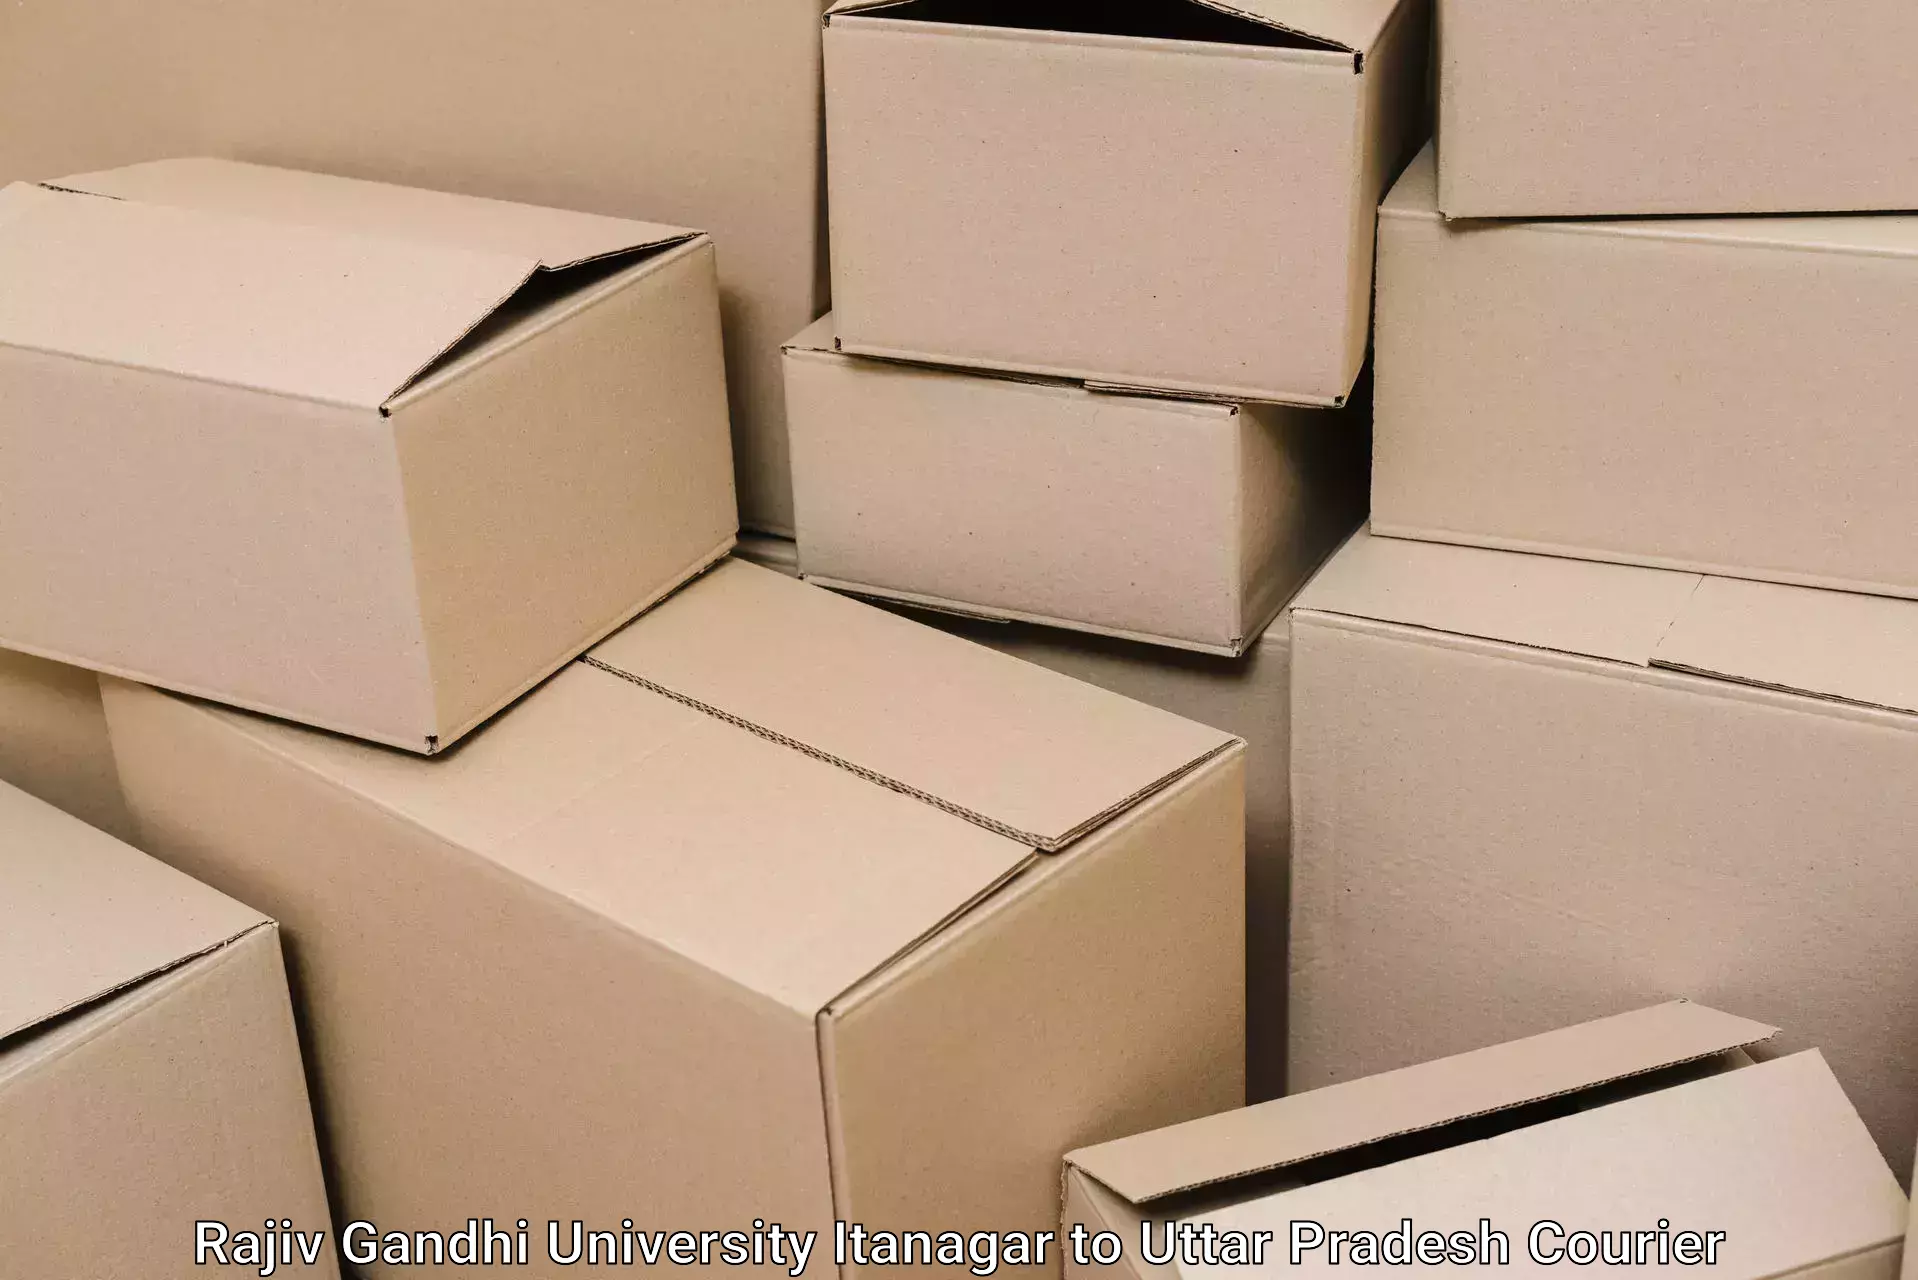 Efficient moving and packing Rajiv Gandhi University Itanagar to Saharanpur